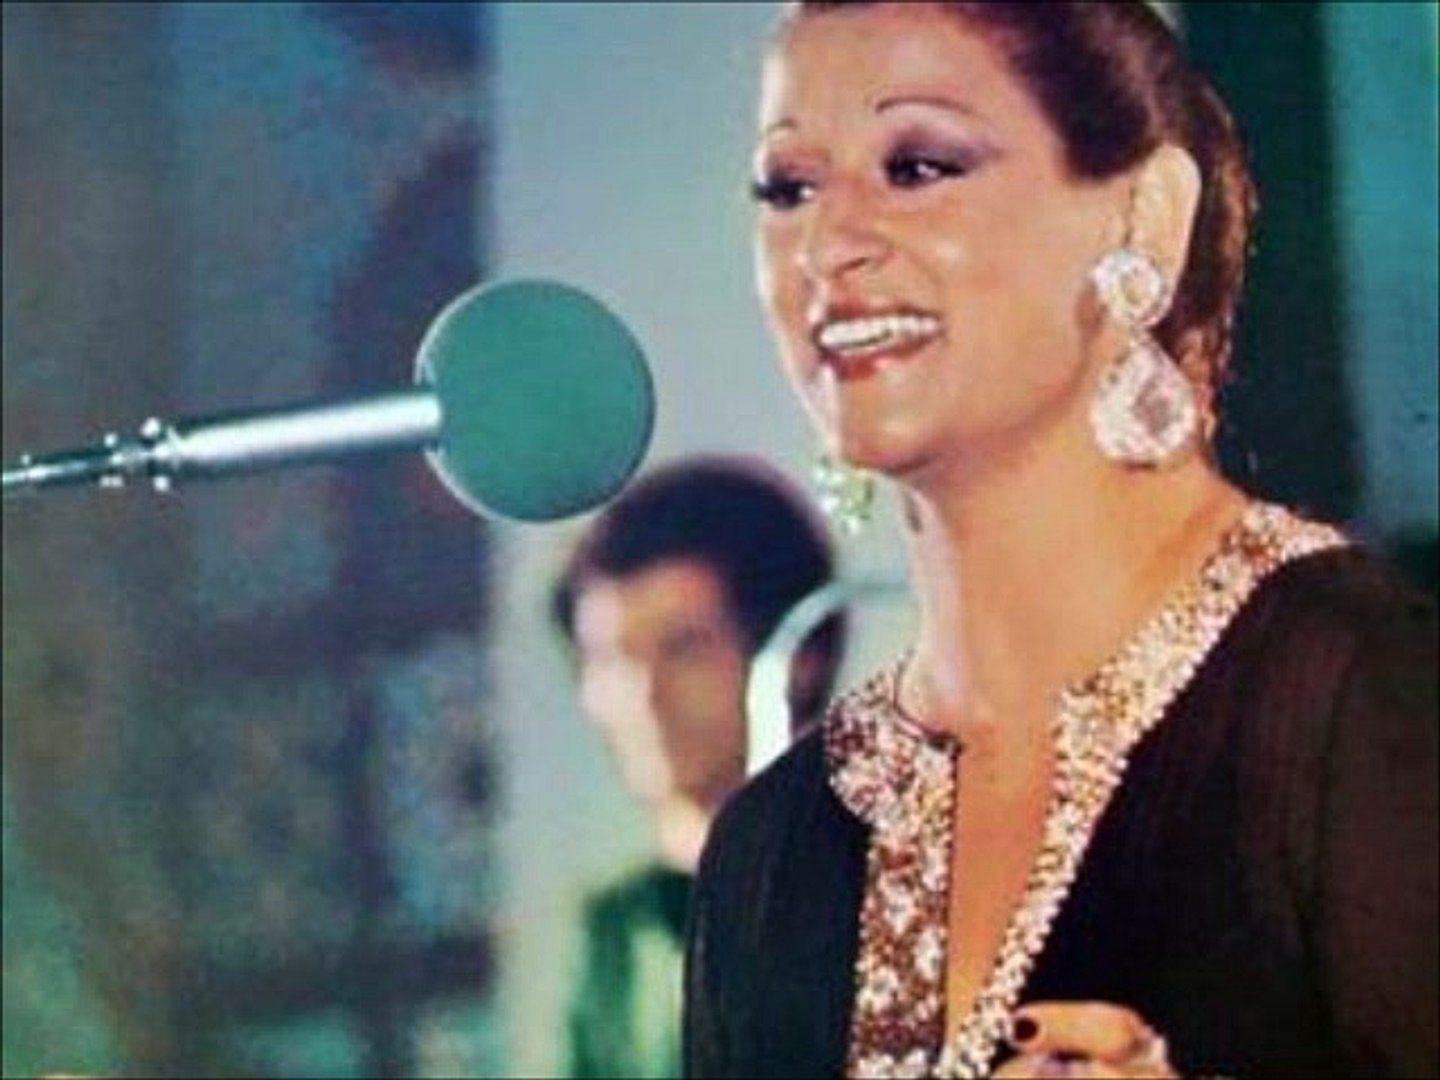 وردة الجزائرية - احضنوا الايام - حفلة جميلة ورائعة ♥ Warda Al Jazairia -  فيديو Dailymotion